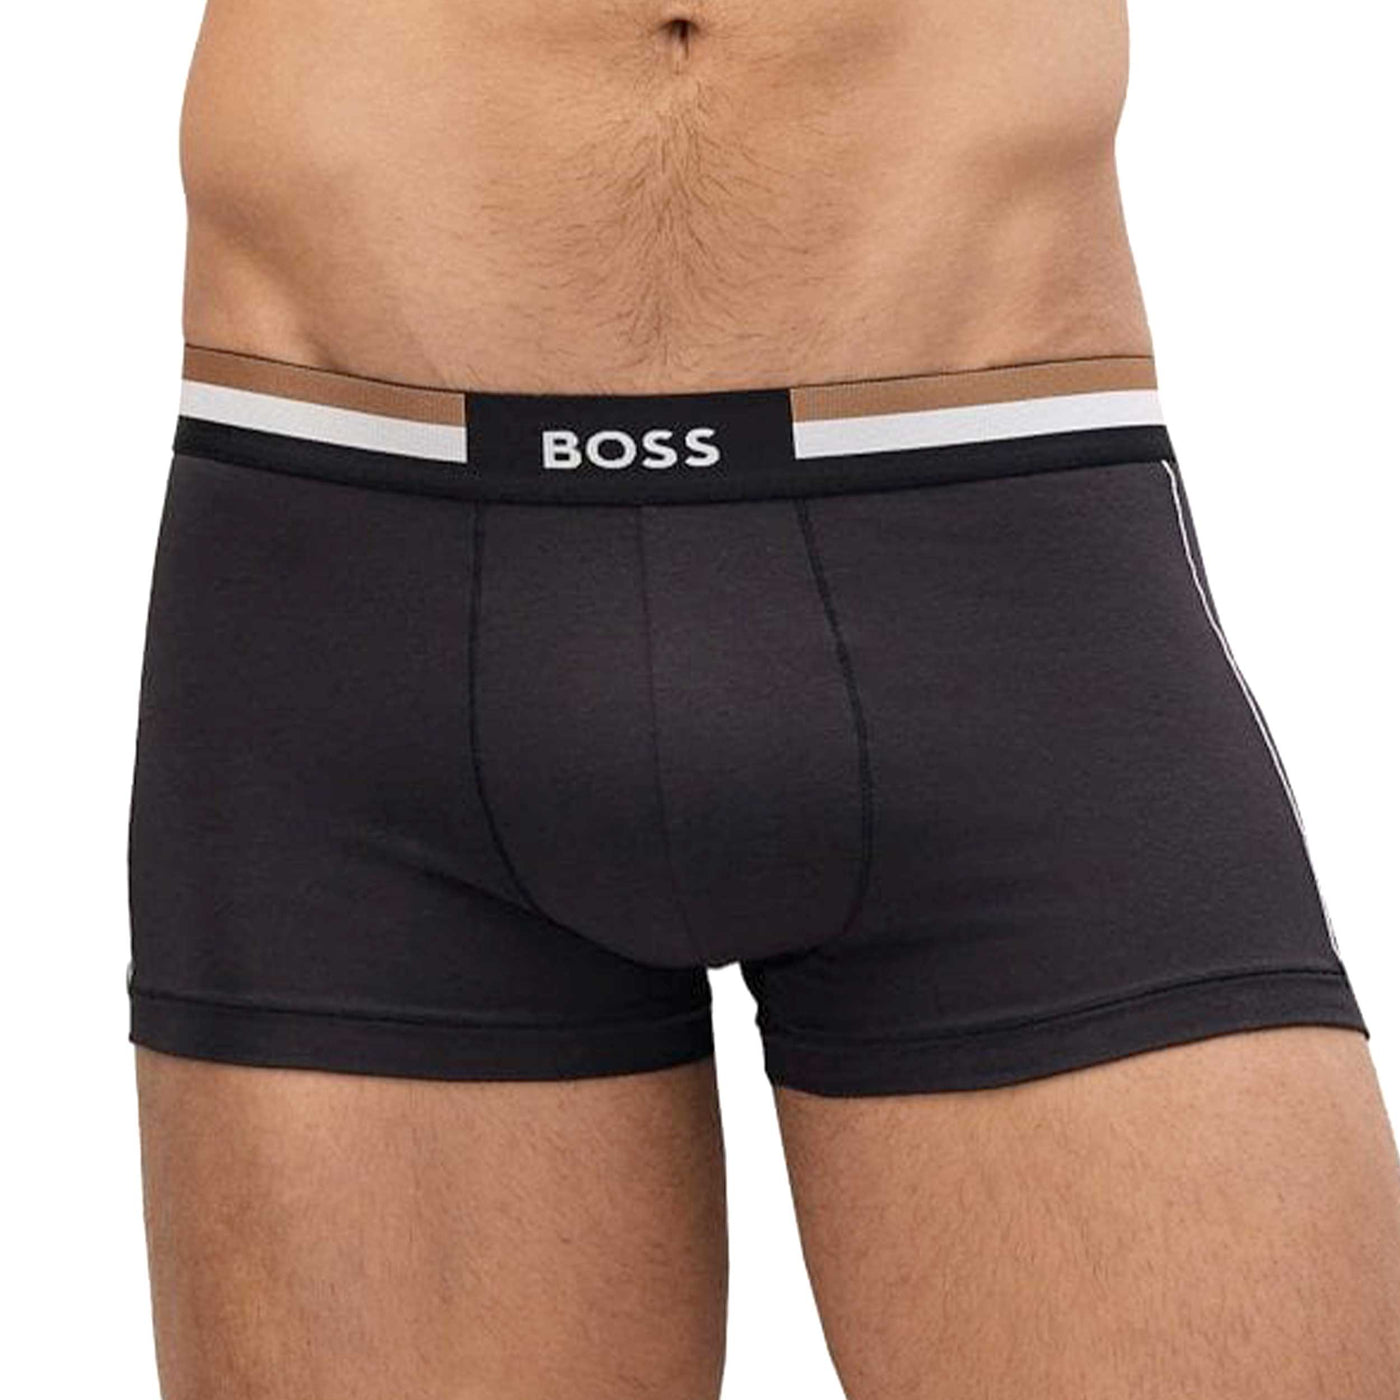 BOSS Trunk Vitality Underwear in Black Model Front